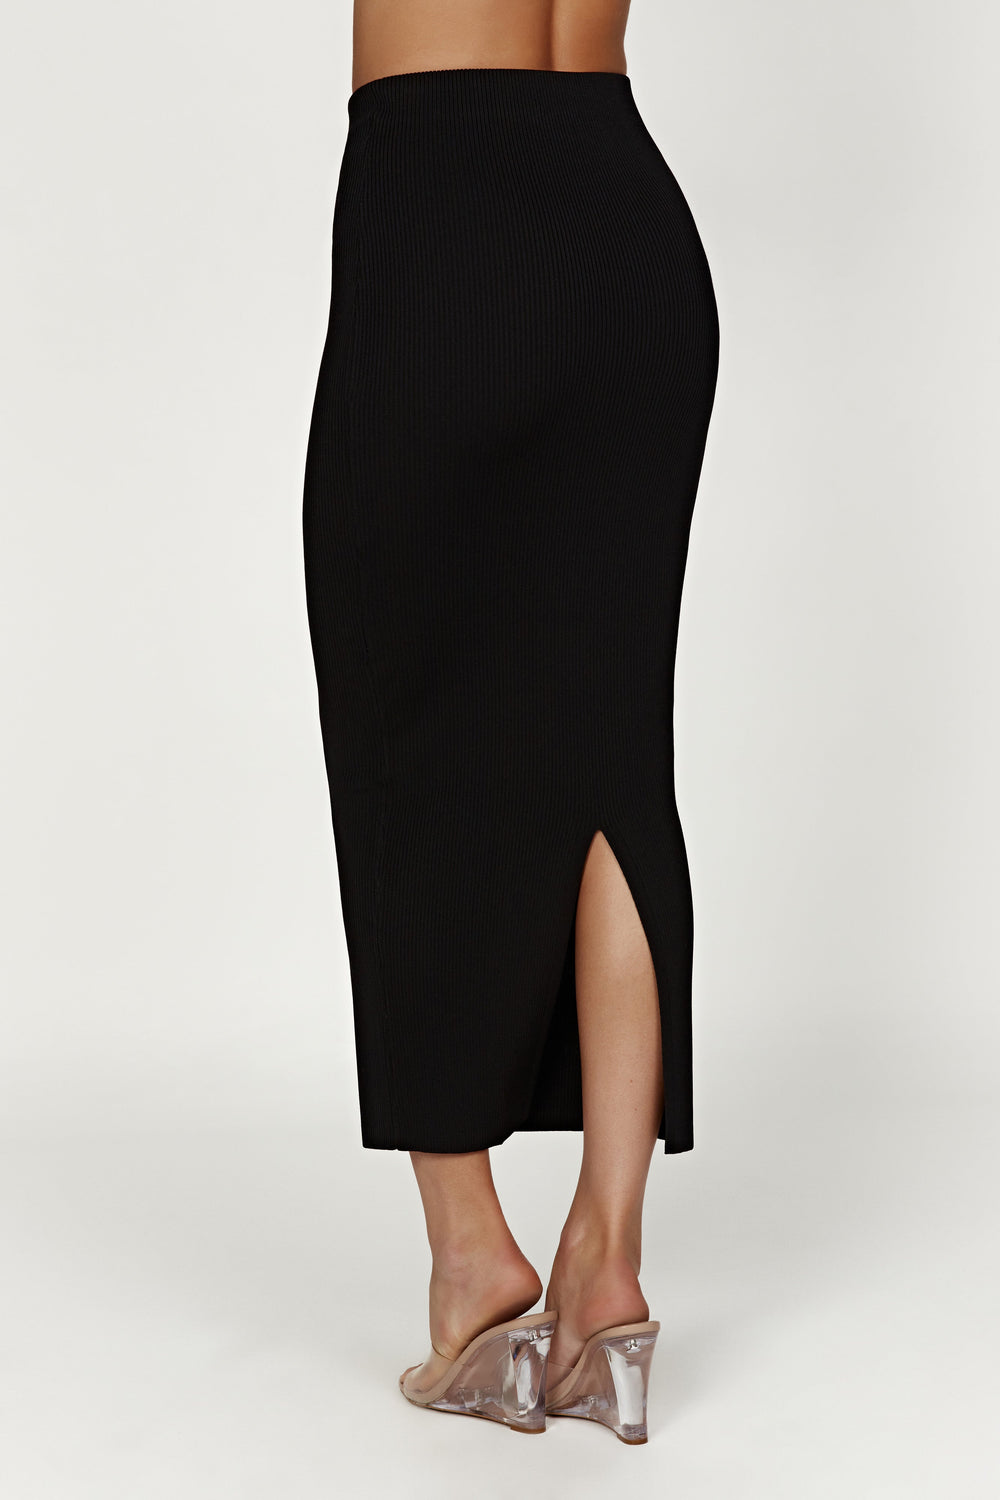 Kaesha Split Maxi Knitted Skirt - Black